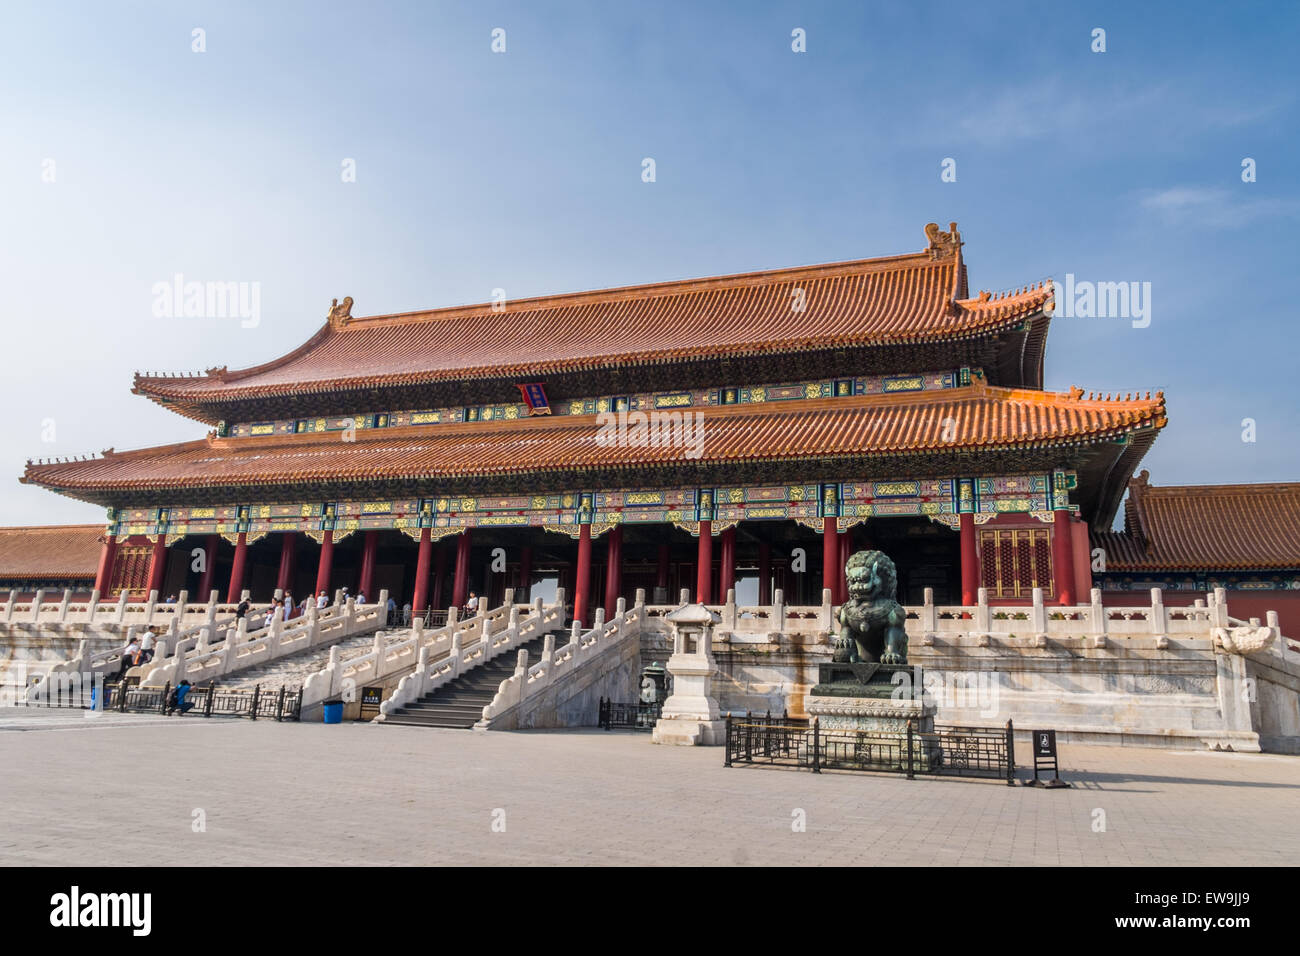 Porte de ville interdite de l'harmonie suprême avec le Lion gardien, Beijing, Chine Banque D'Images